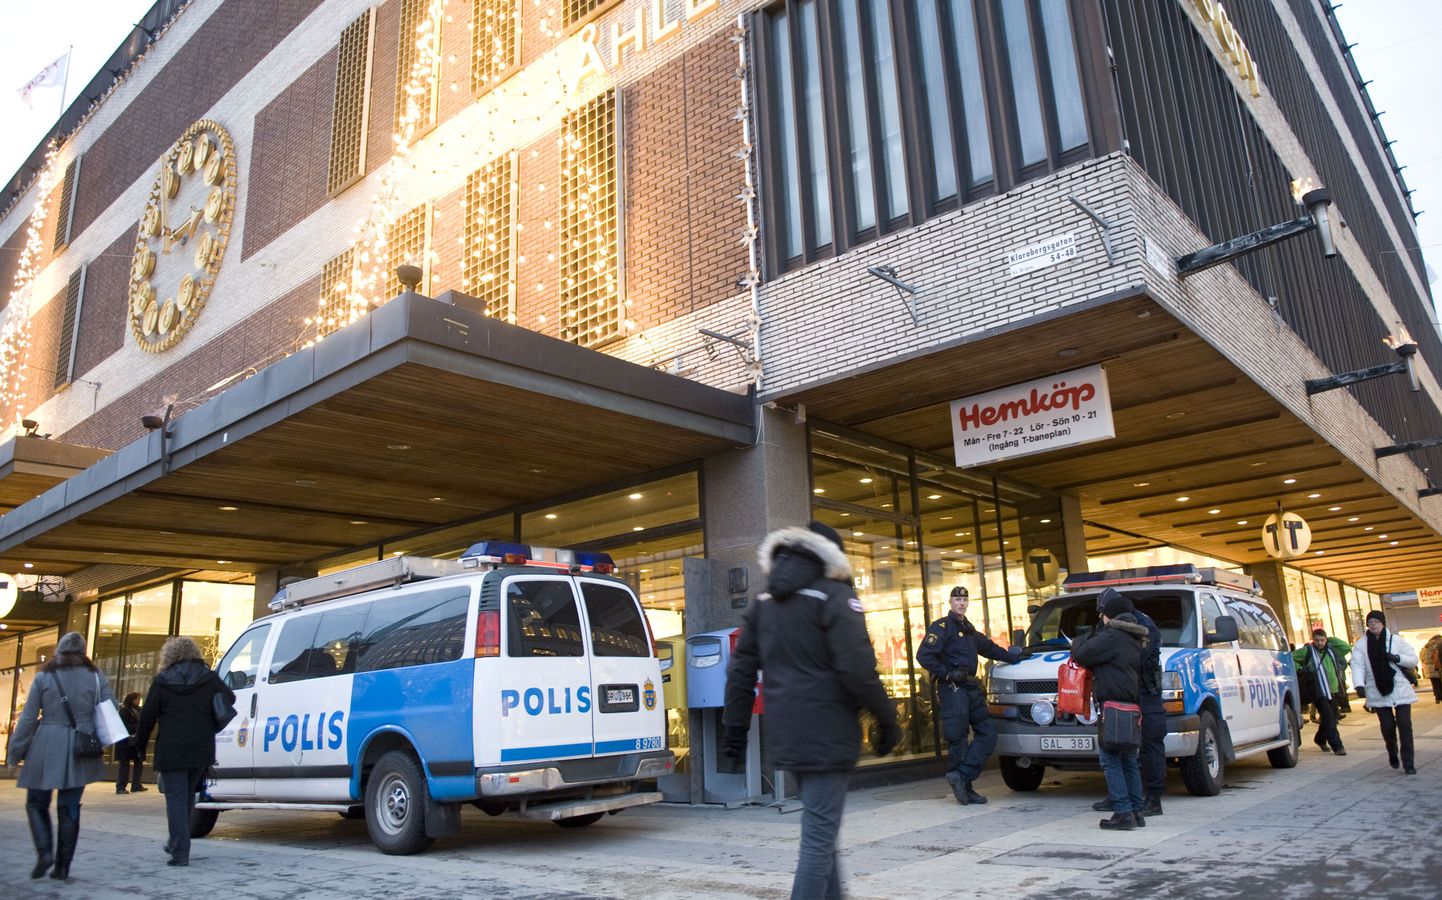 Rootsi politseiautod Stockholmis Drottninggatanil.